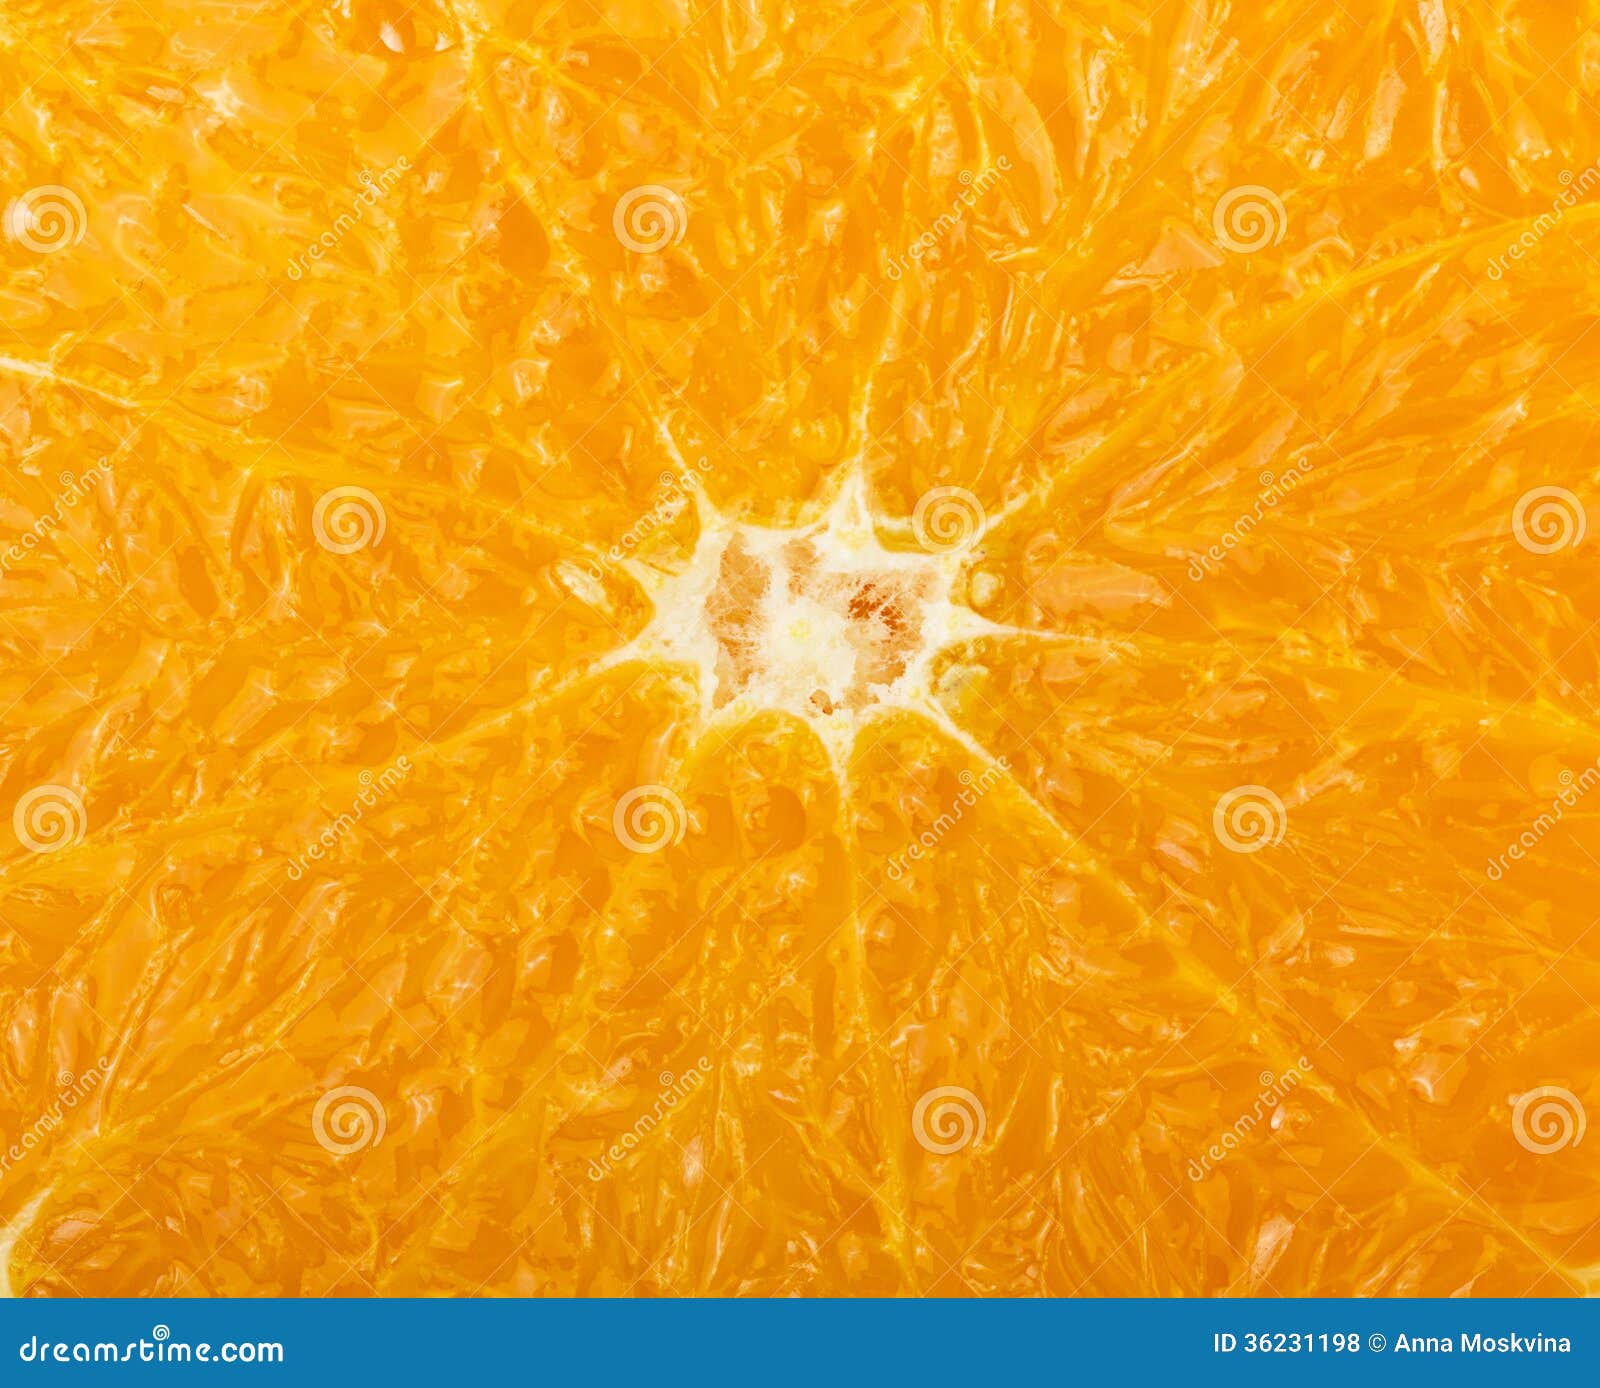 Фактура мякоть апельсин